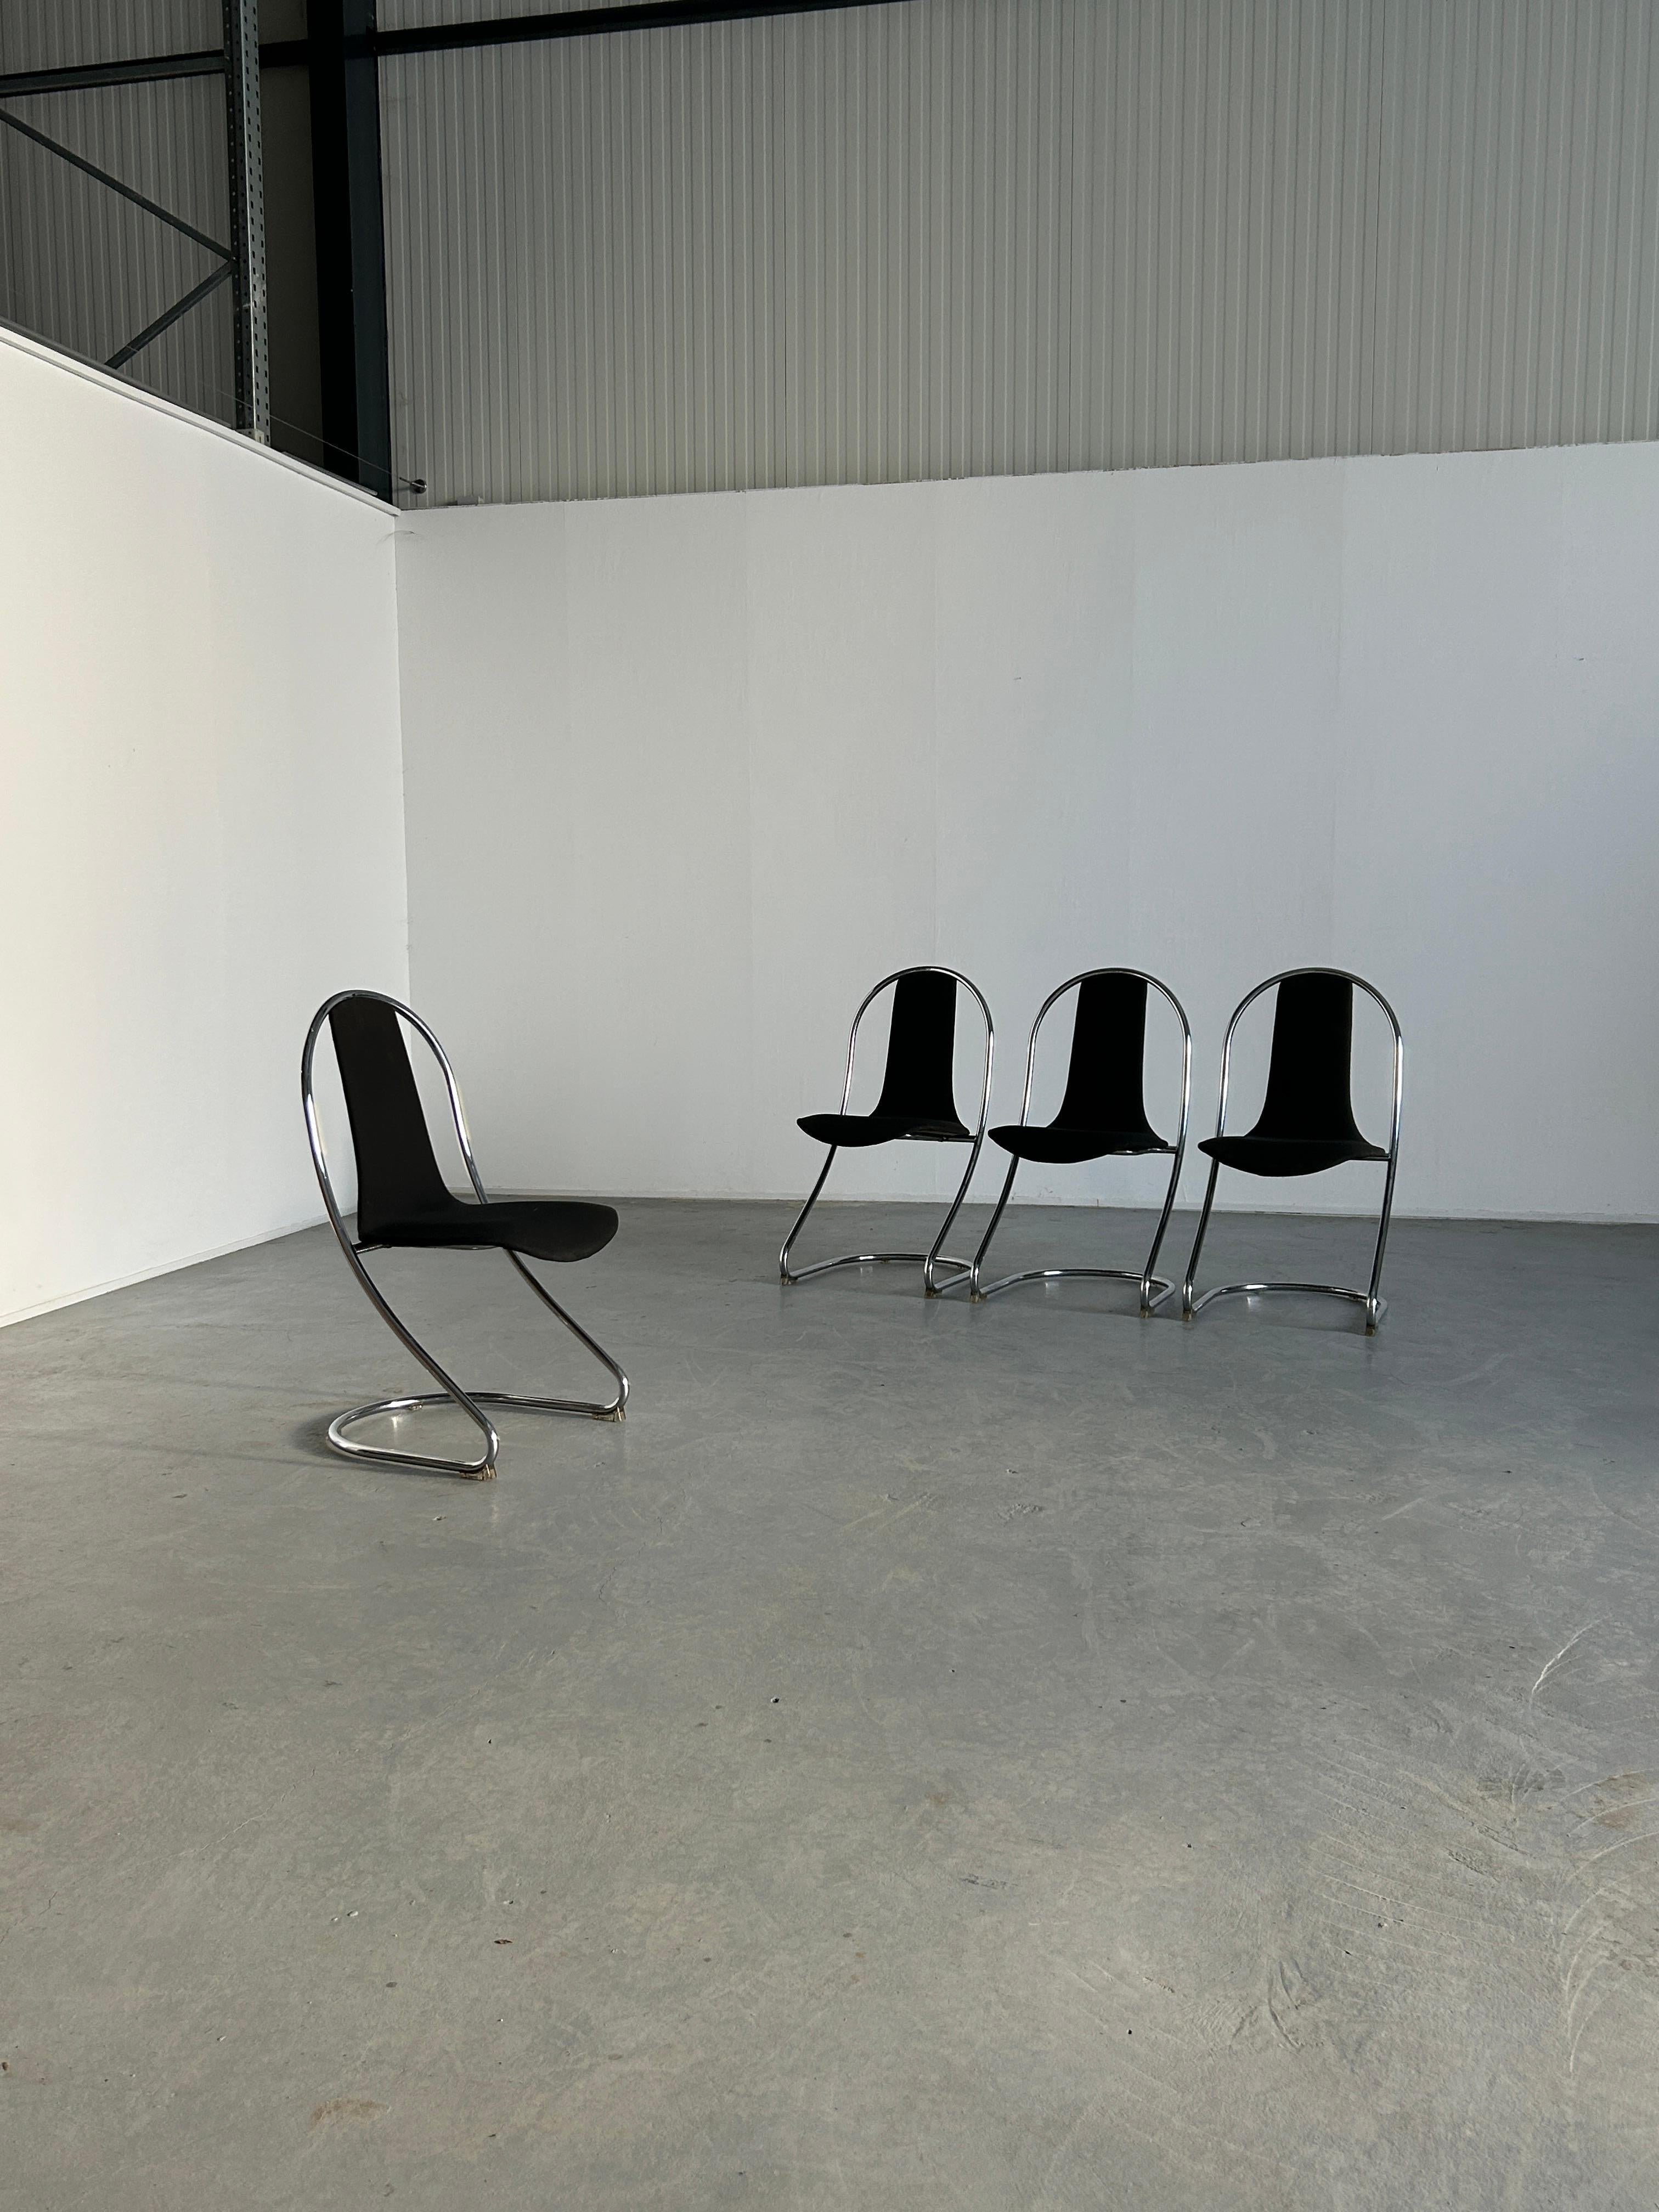 Quatre chaises italiennes Space AGE en porte-à-faux, en tube d'acier chromé, assise et dossier rembourrés d'une seule pièce.
Patins de sol en plastique transparent
Production italienne inconnue de la fin des années 1980.

Petites traces